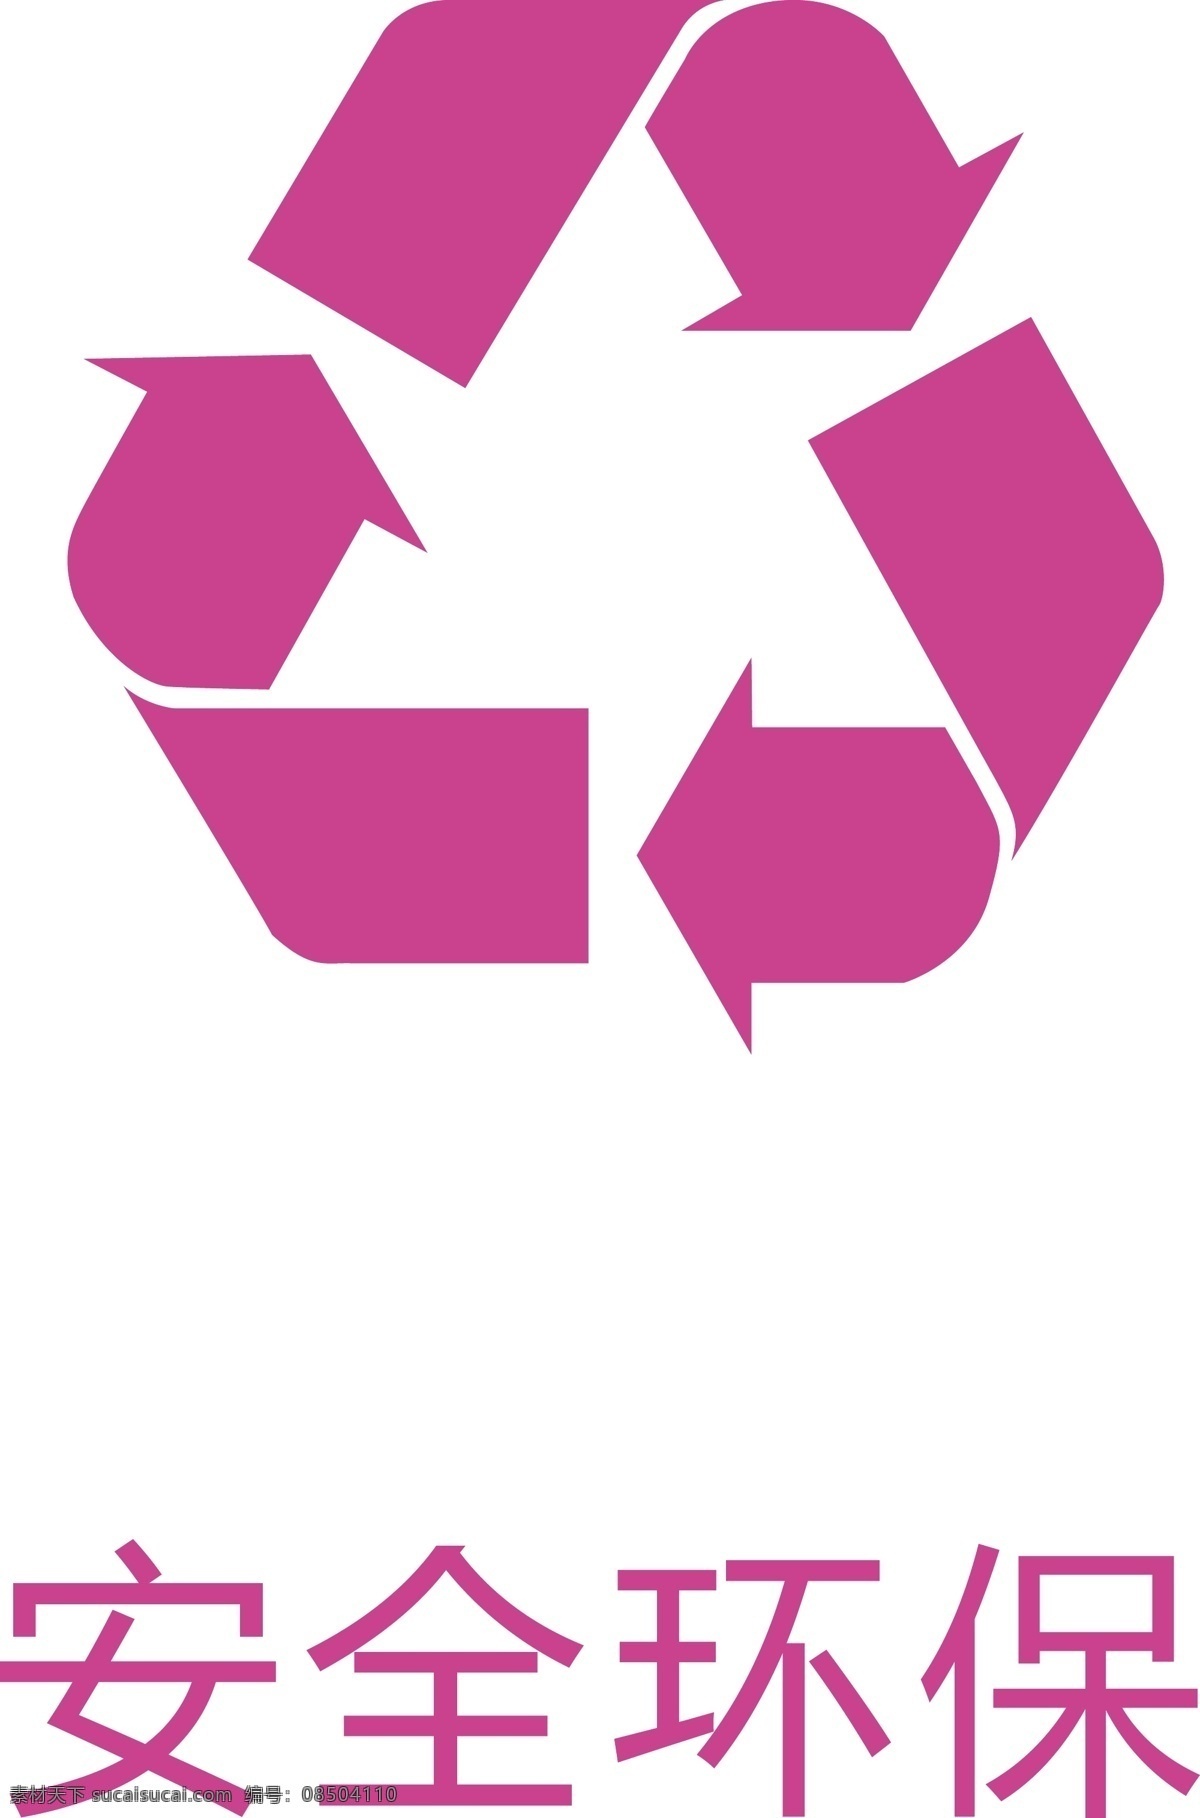 安全环保 安全标志 环保标志 可回收标志 绿色标志 盒子标识 logo logo设计